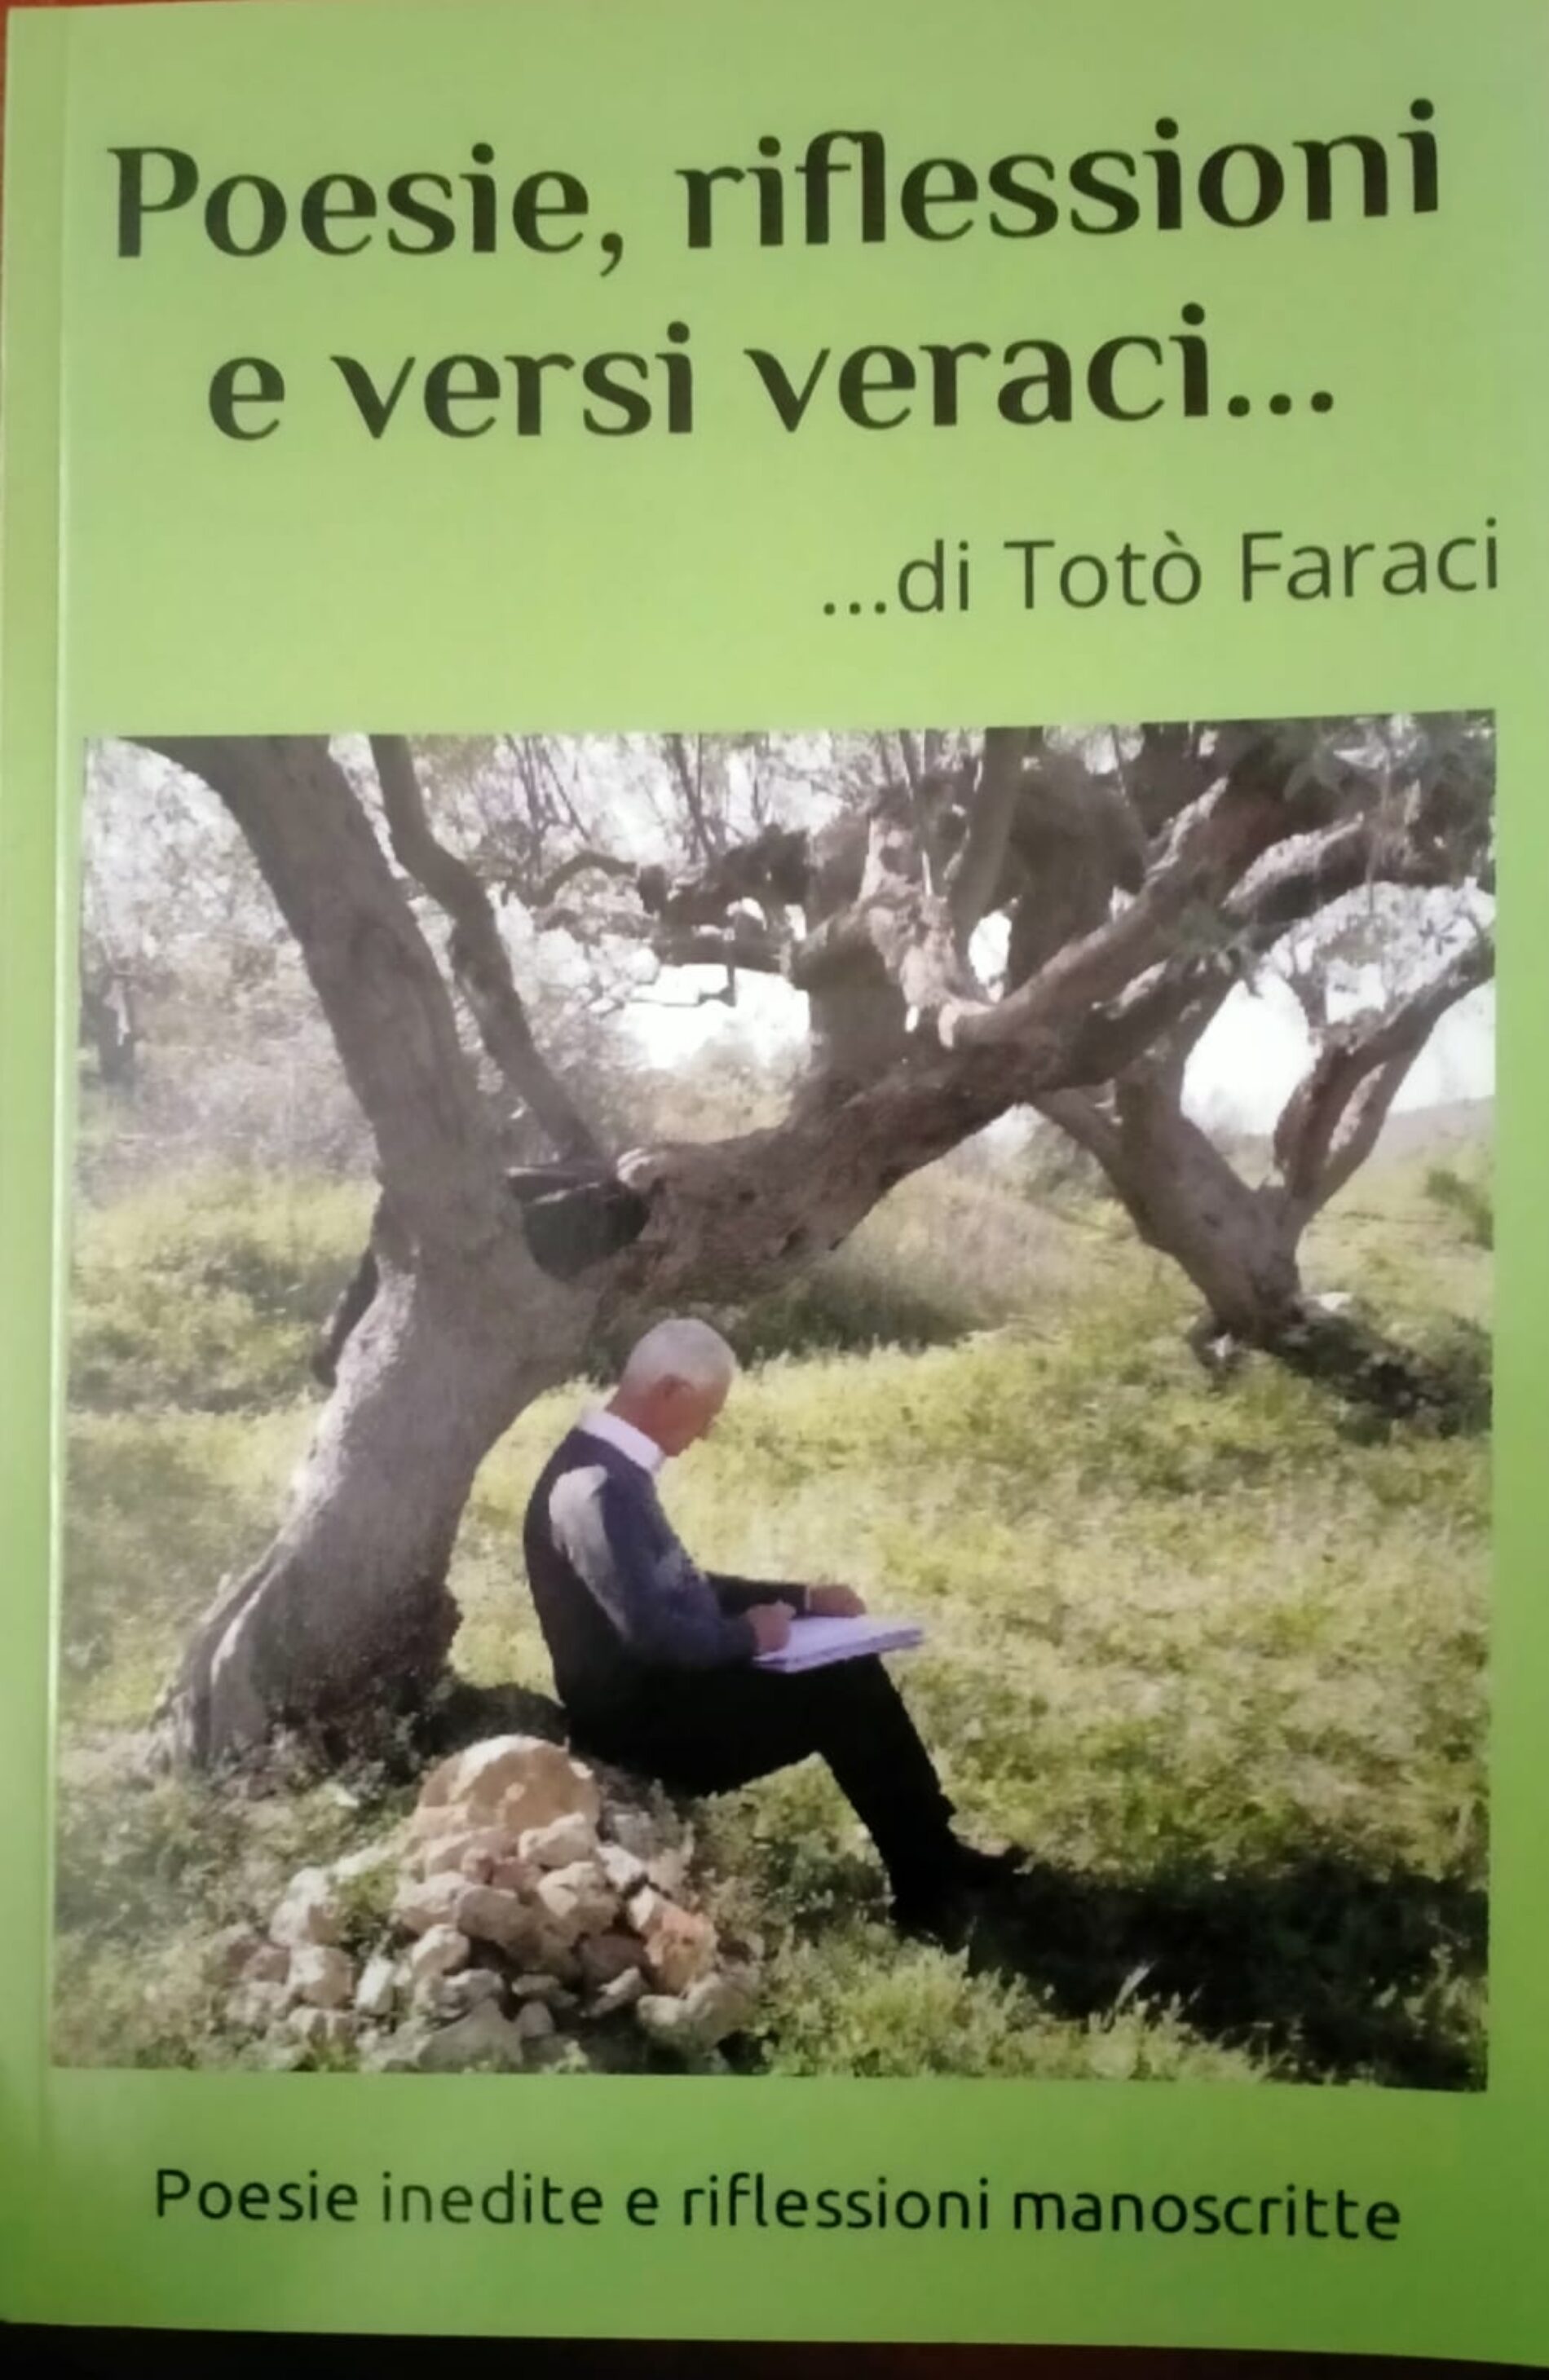 BARRAFRANCA. Pubblicato dai familiari di Totò Faraci il volume “Poesie, riflessioni e versi veraci di Totò Faraci. Poesie inedite e versi manoscritti”.